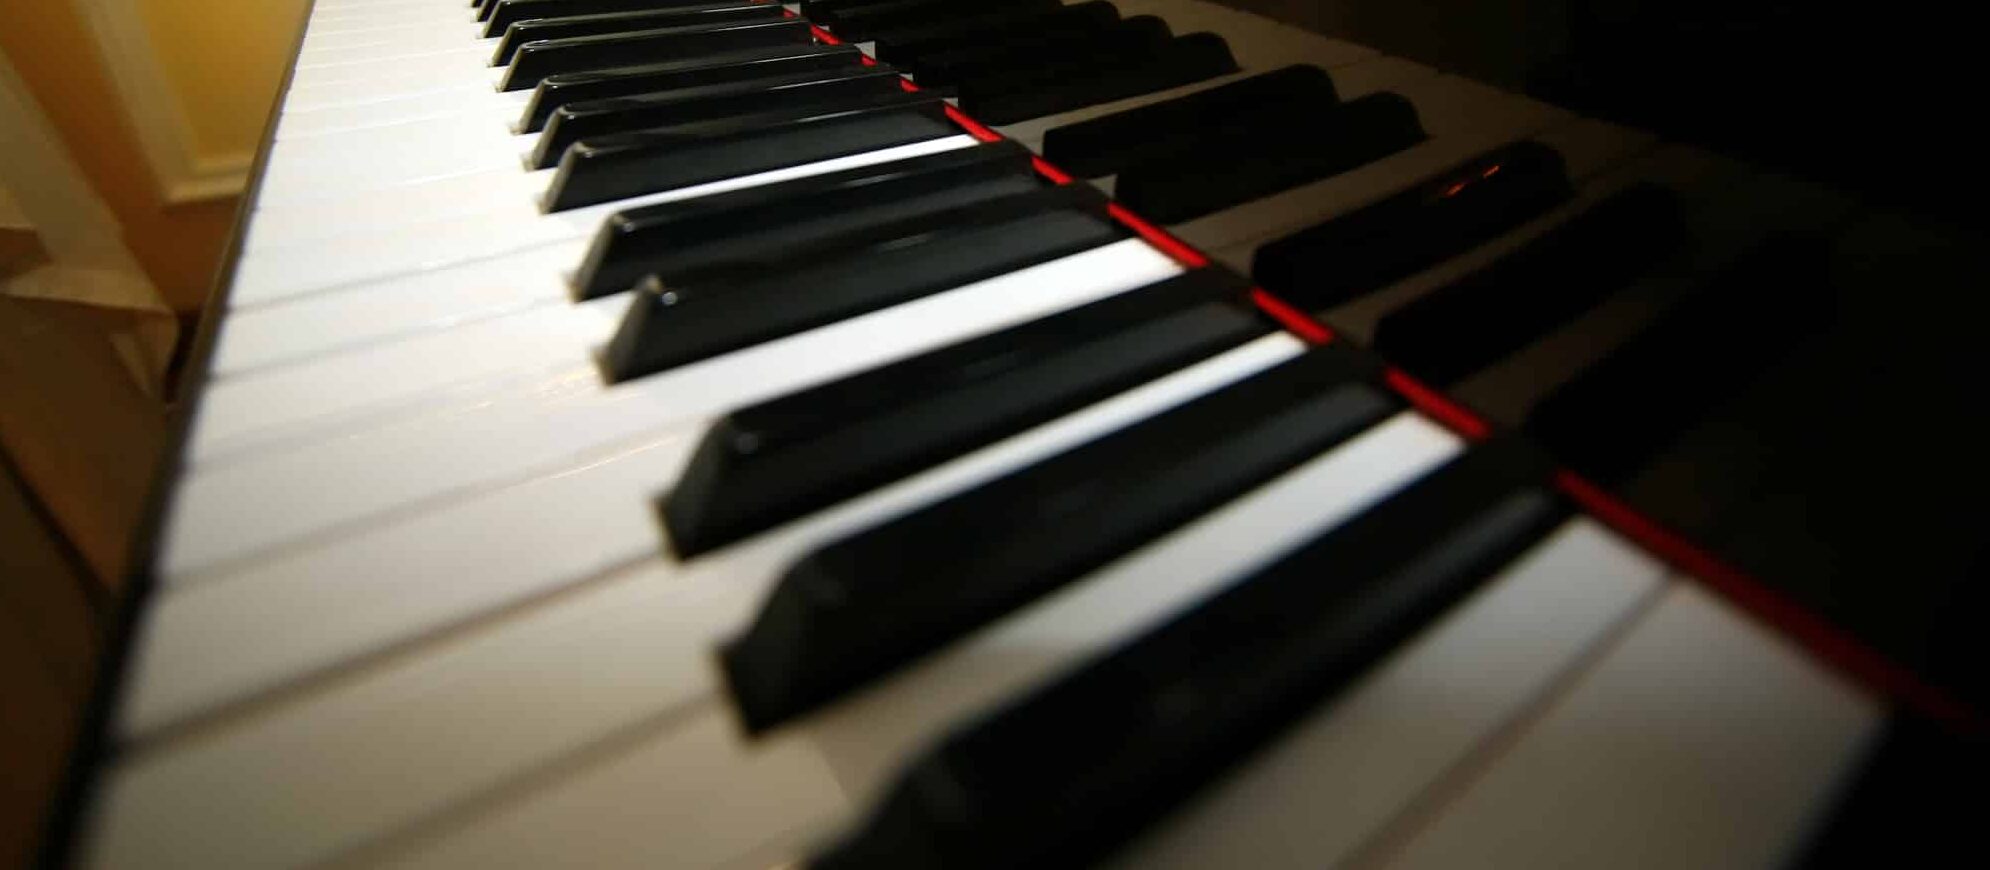 Grand piano ebony and ivory keys